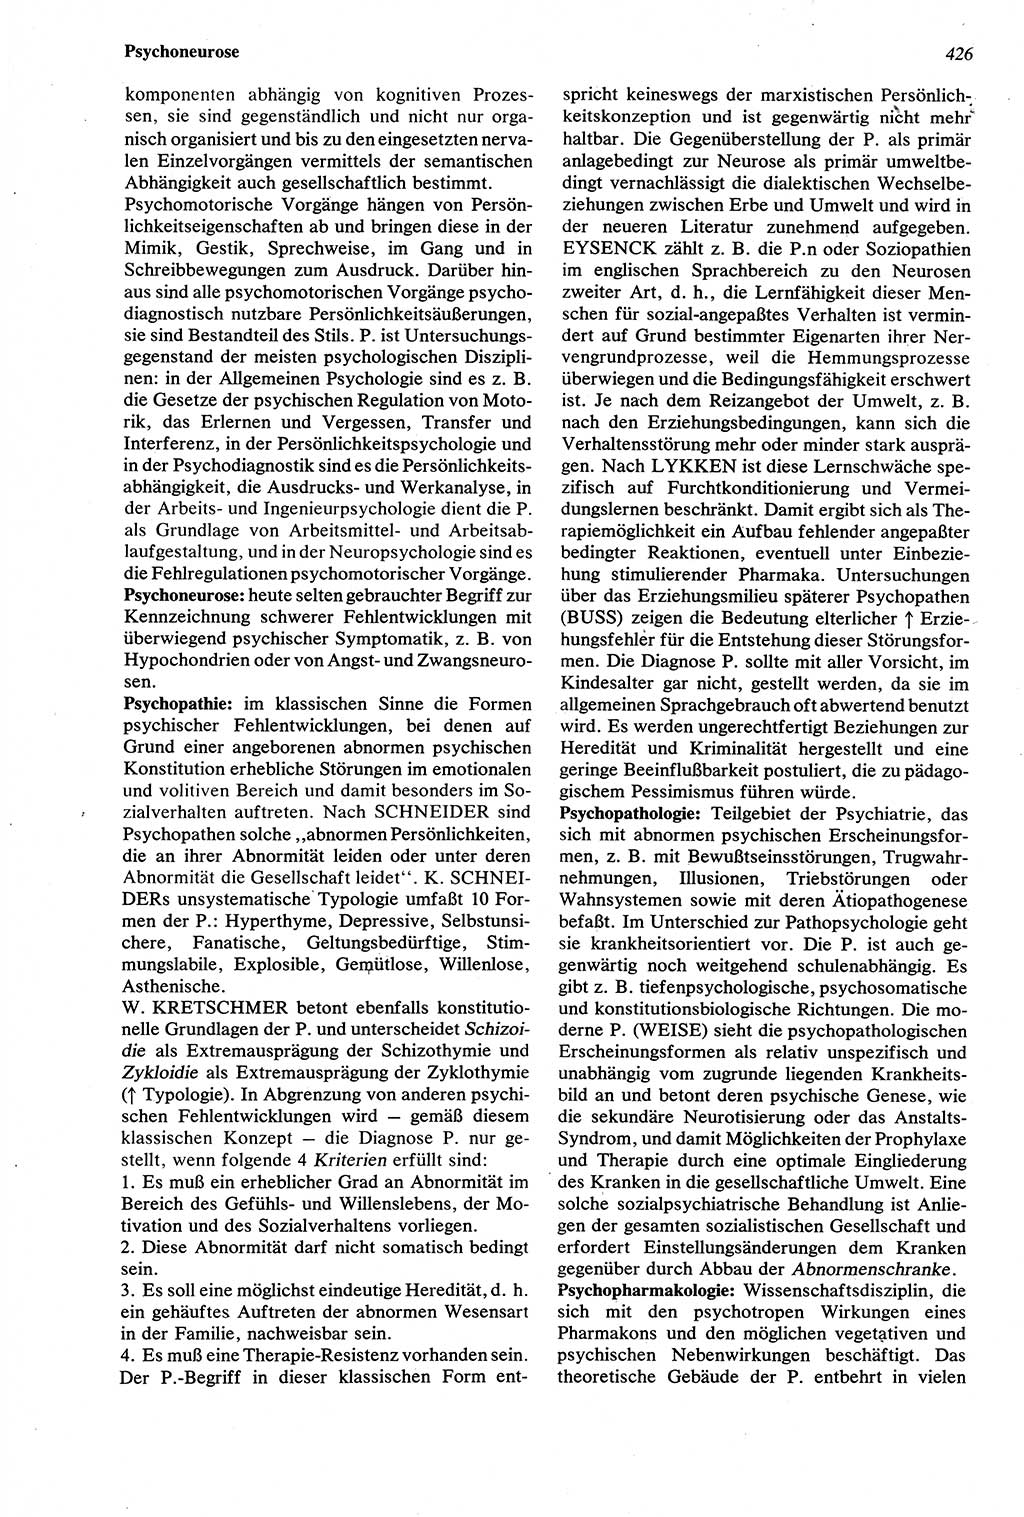 Wörterbuch der Psychologie [Deutsche Demokratische Republik (DDR)] 1976, Seite 426 (Wb. Psych. DDR 1976, S. 426)